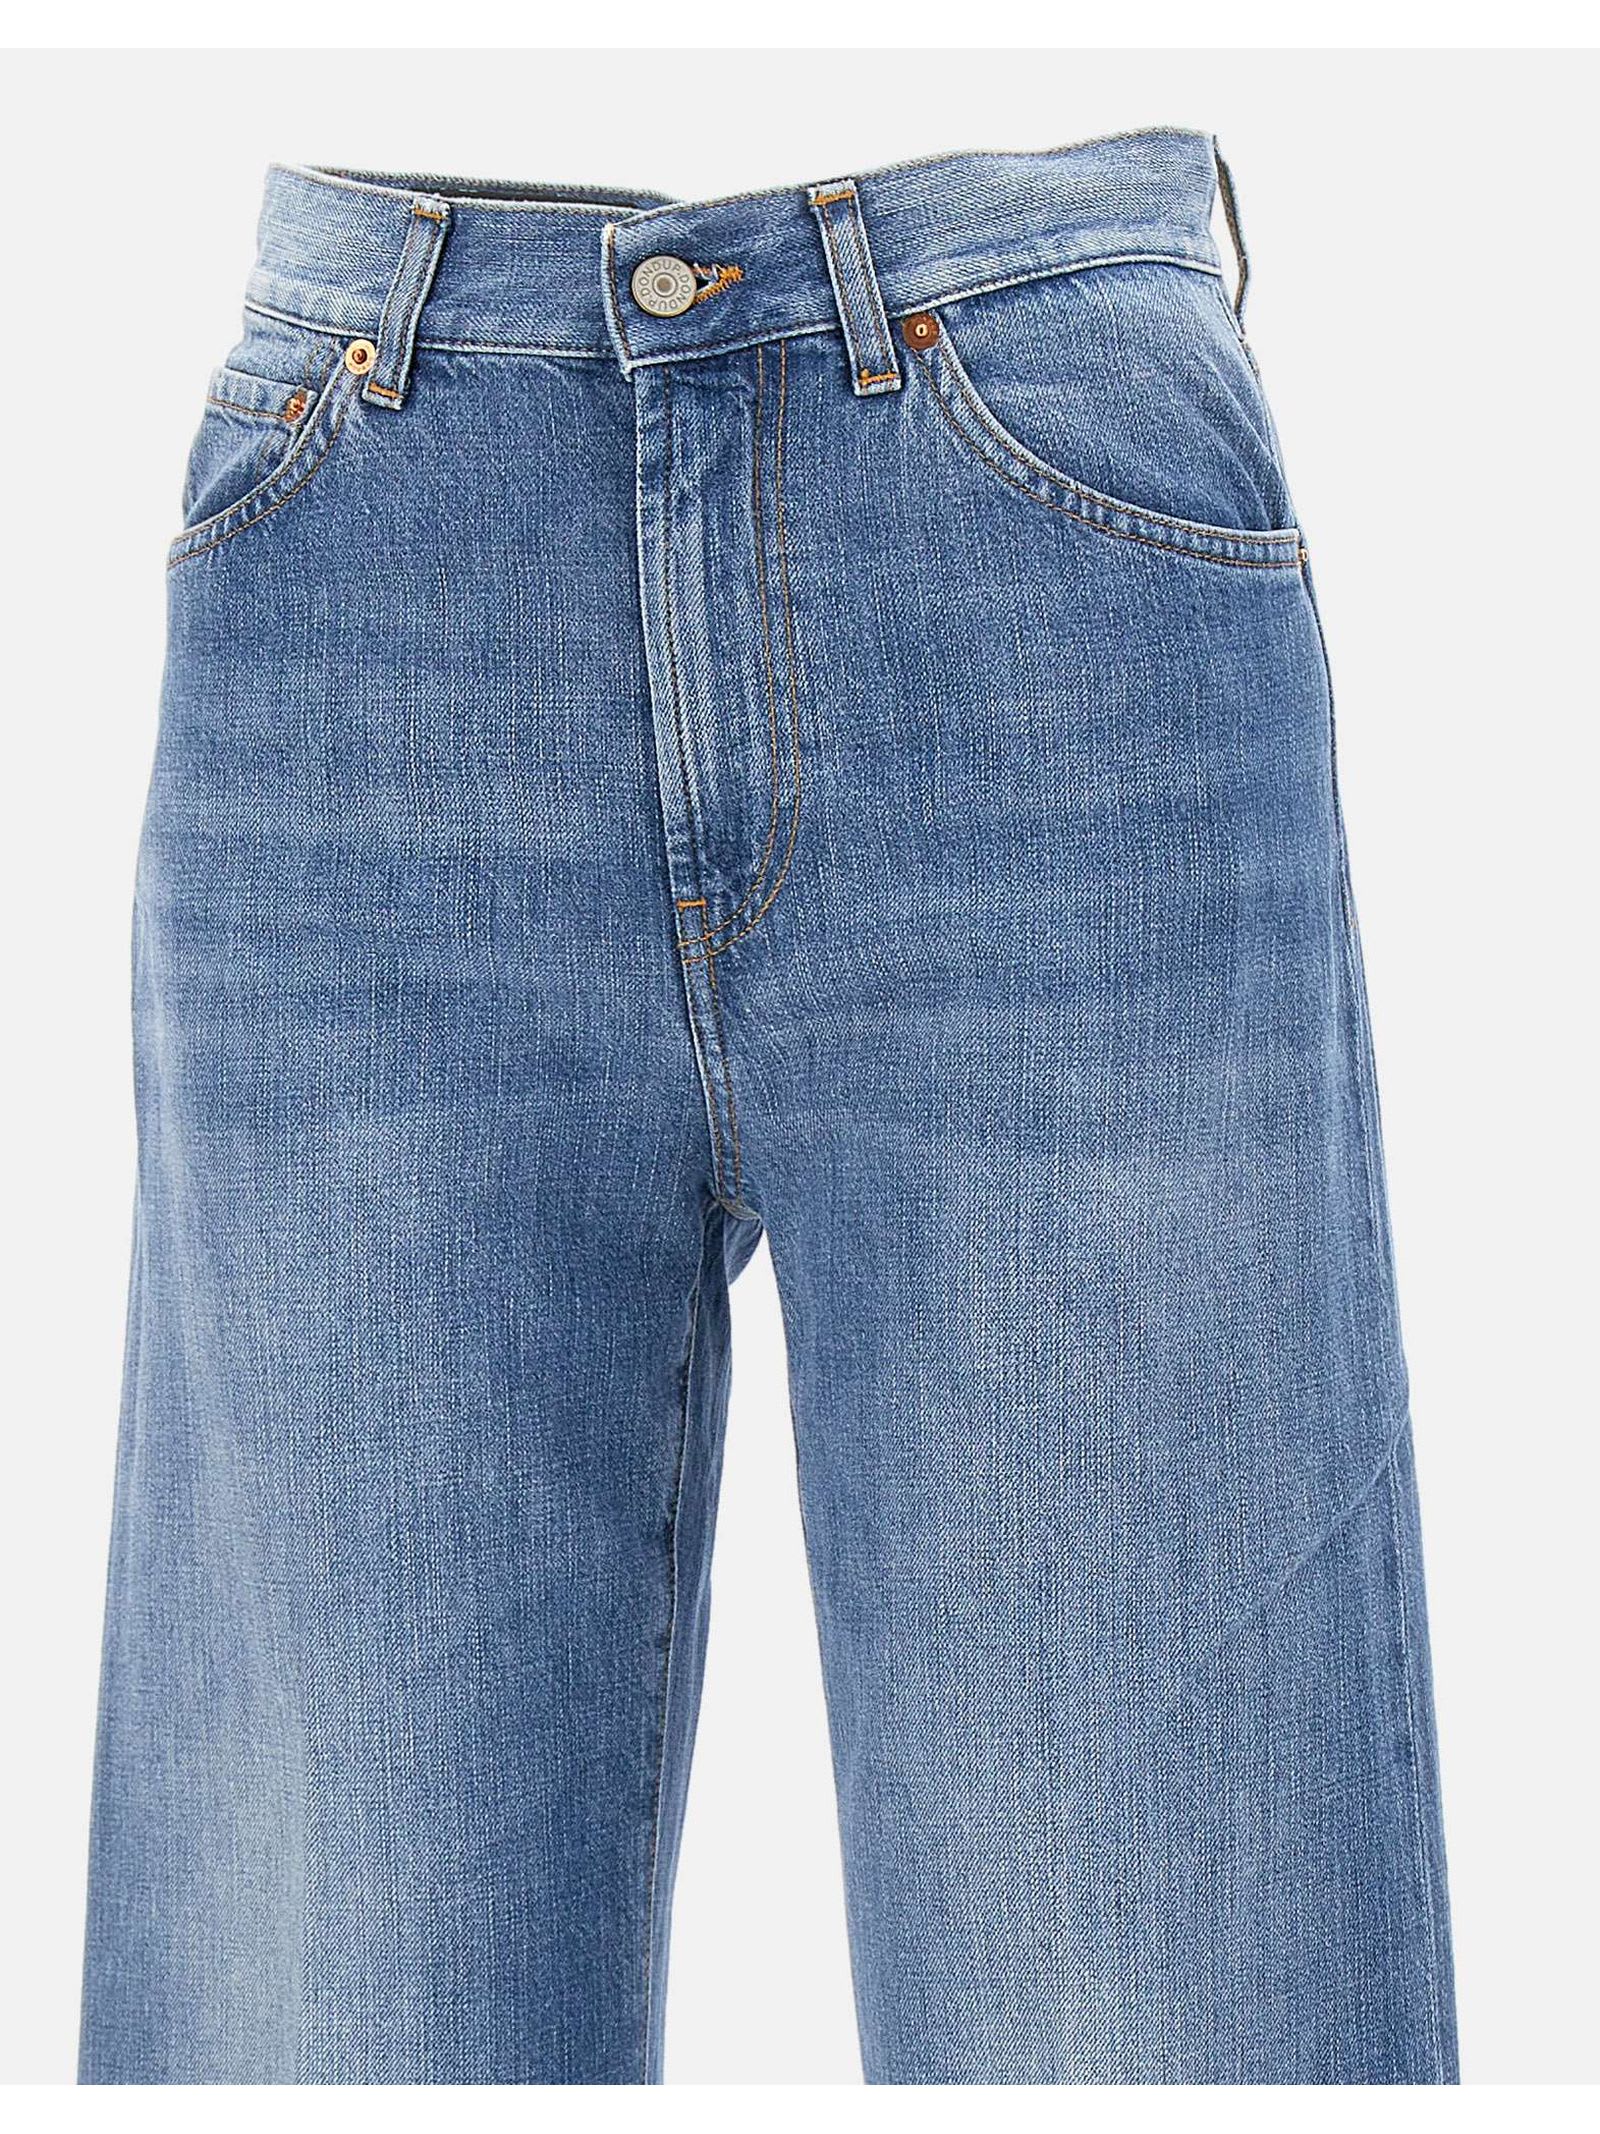 Shop Dondup Blue Cotton Denim Jeans